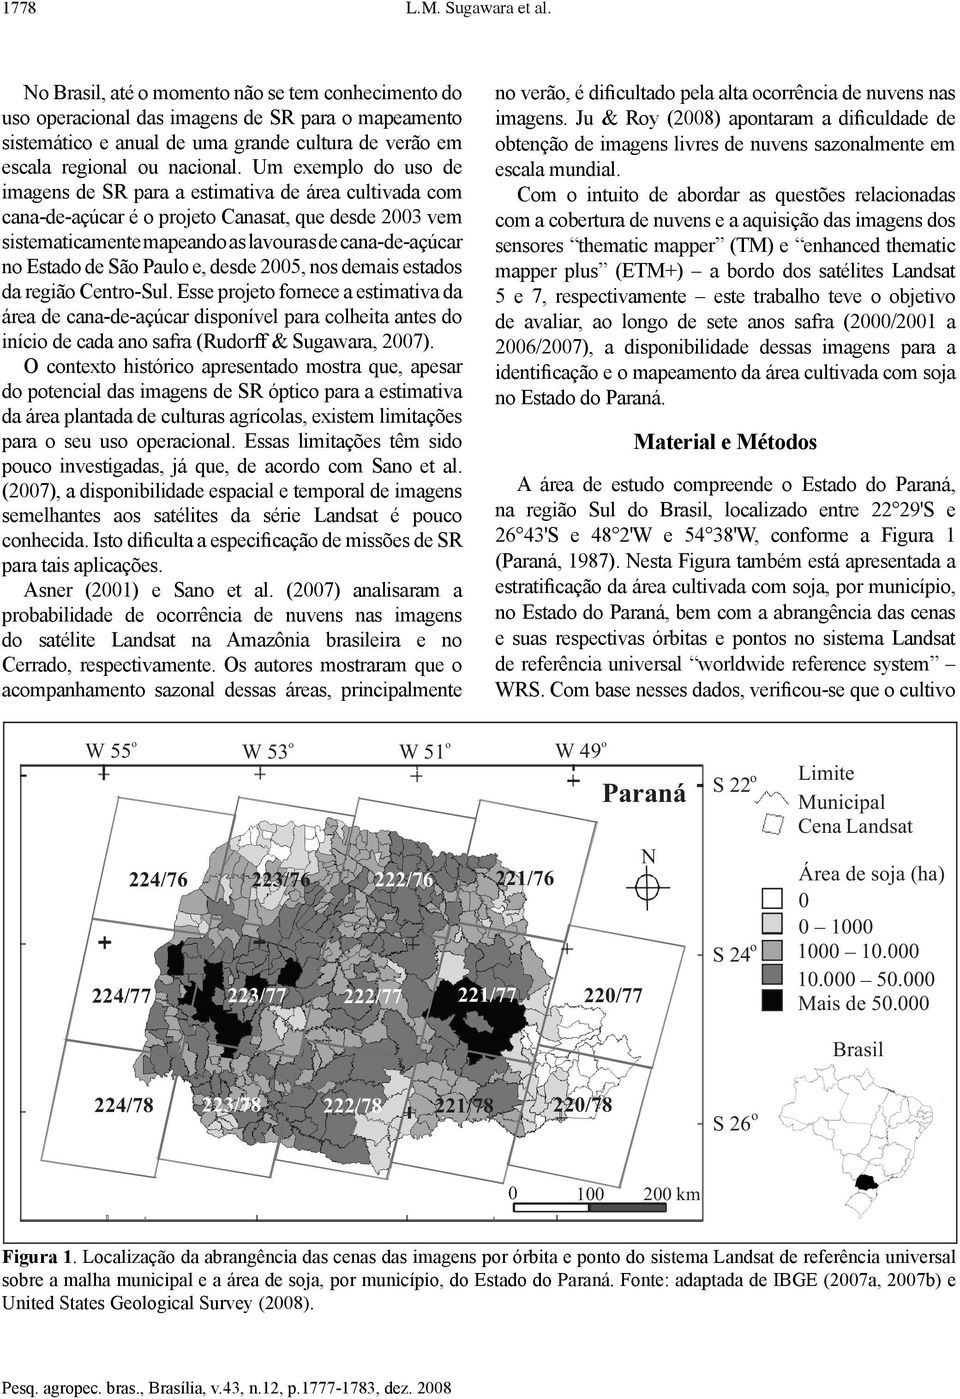 Um exemplo do uso de imagens de SR para a estimativa de área cultivada com cana-de-açúcar é o projeto Canasat, que desde 2003 vem sistematicamente mapeando as lavouras de cana-de-açúcar no Estado de